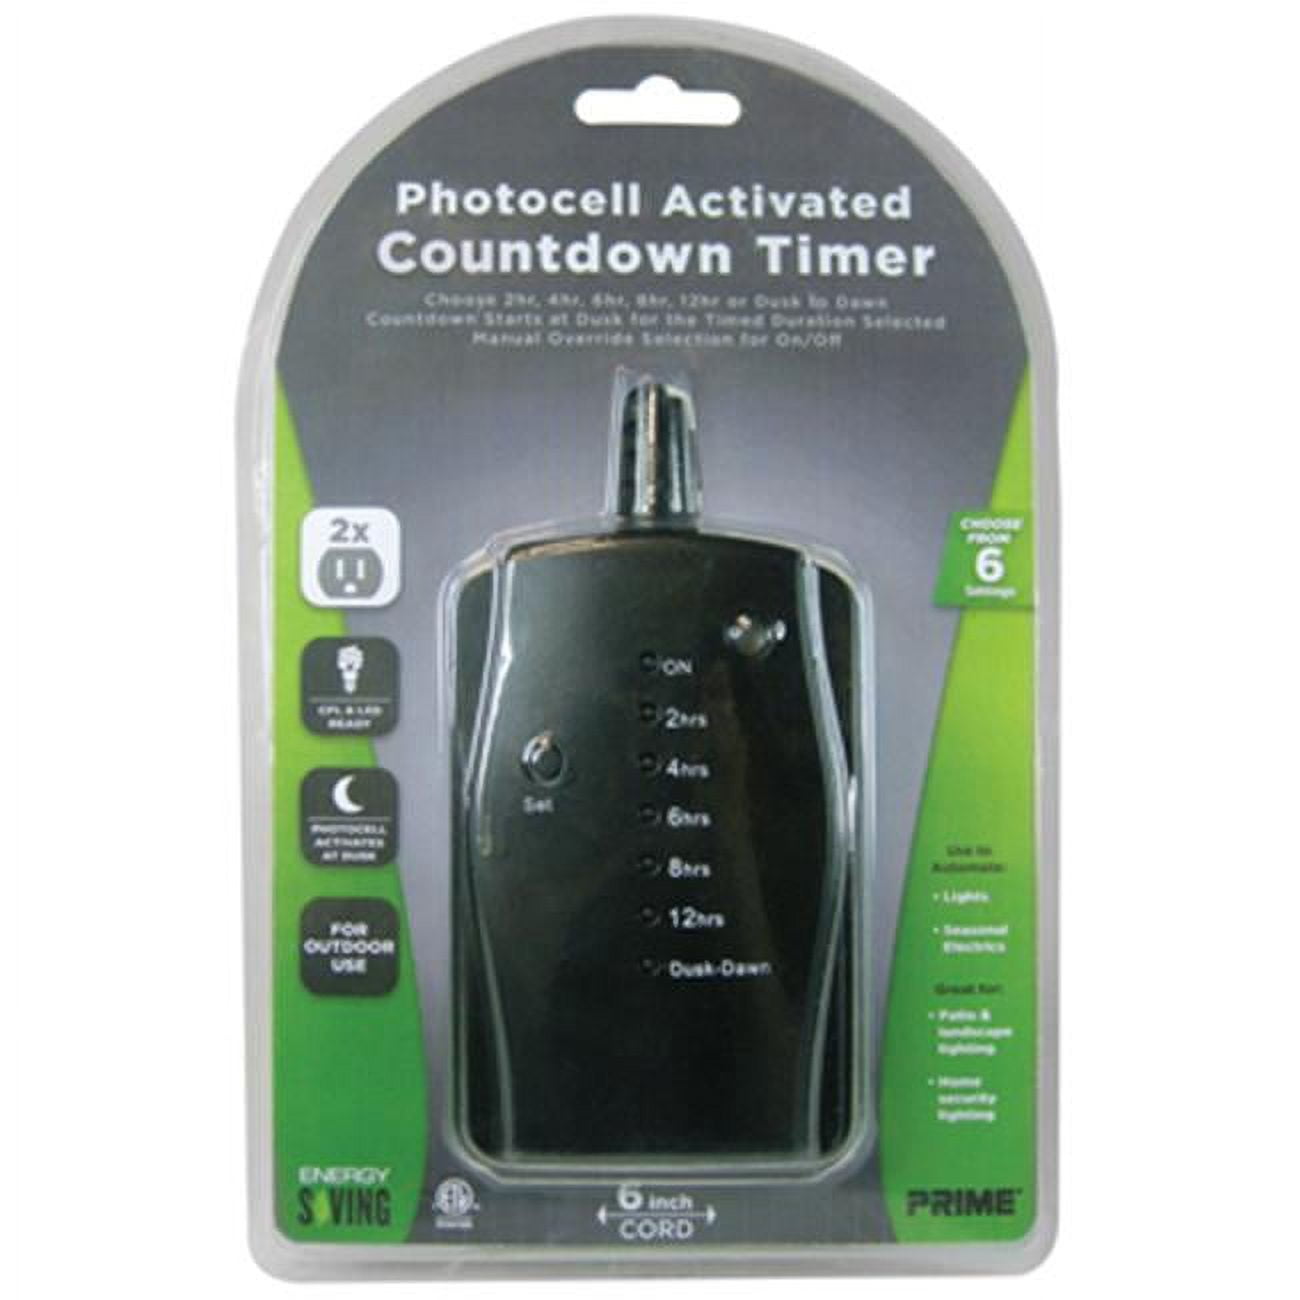 Tnoled02 2 Outlet Countdown Timer, Black